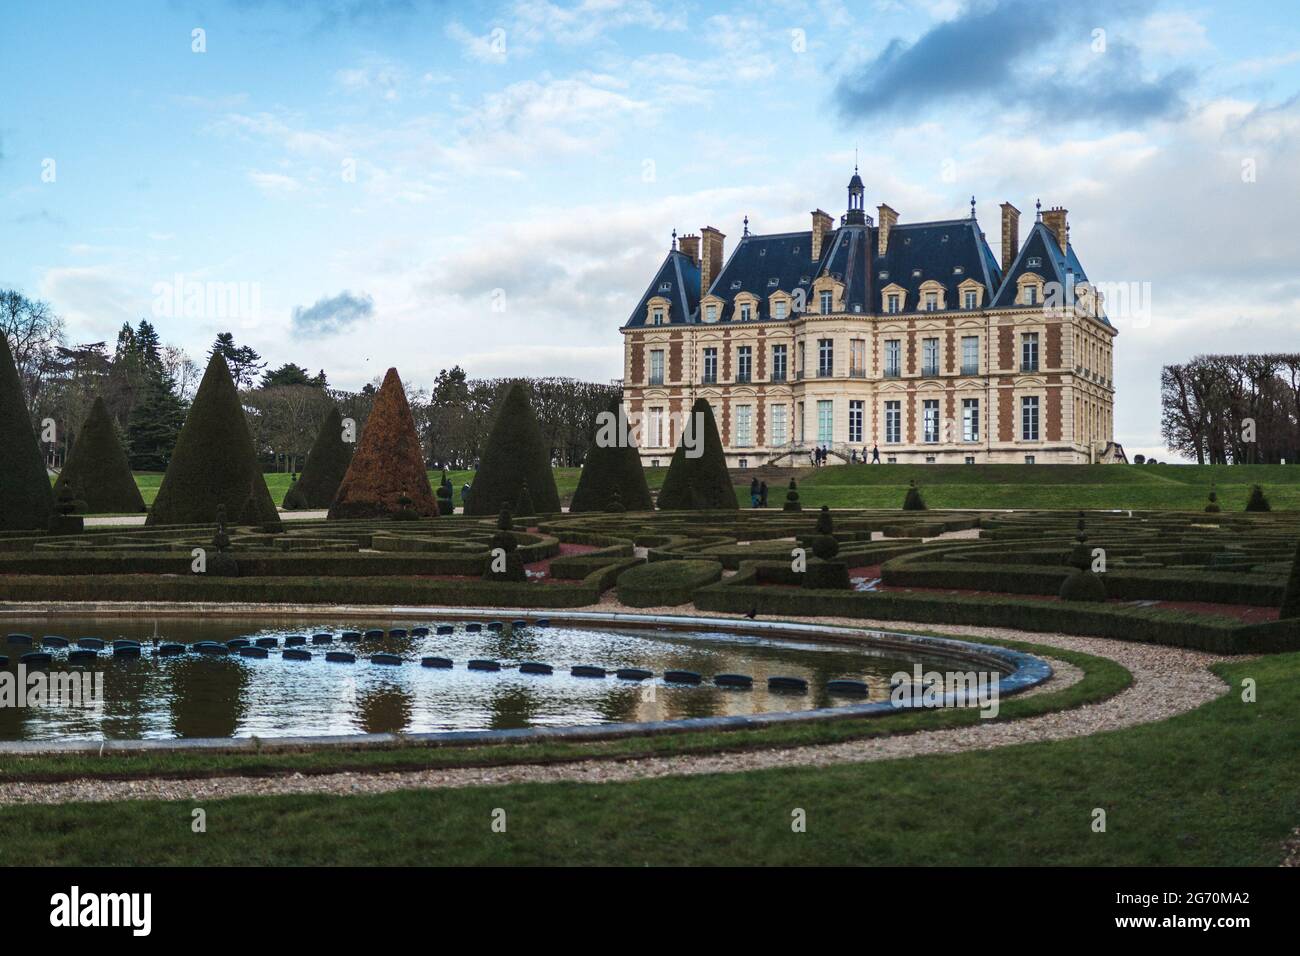 Chateau de Sceaux museum in Sceaux, France Stock Photo